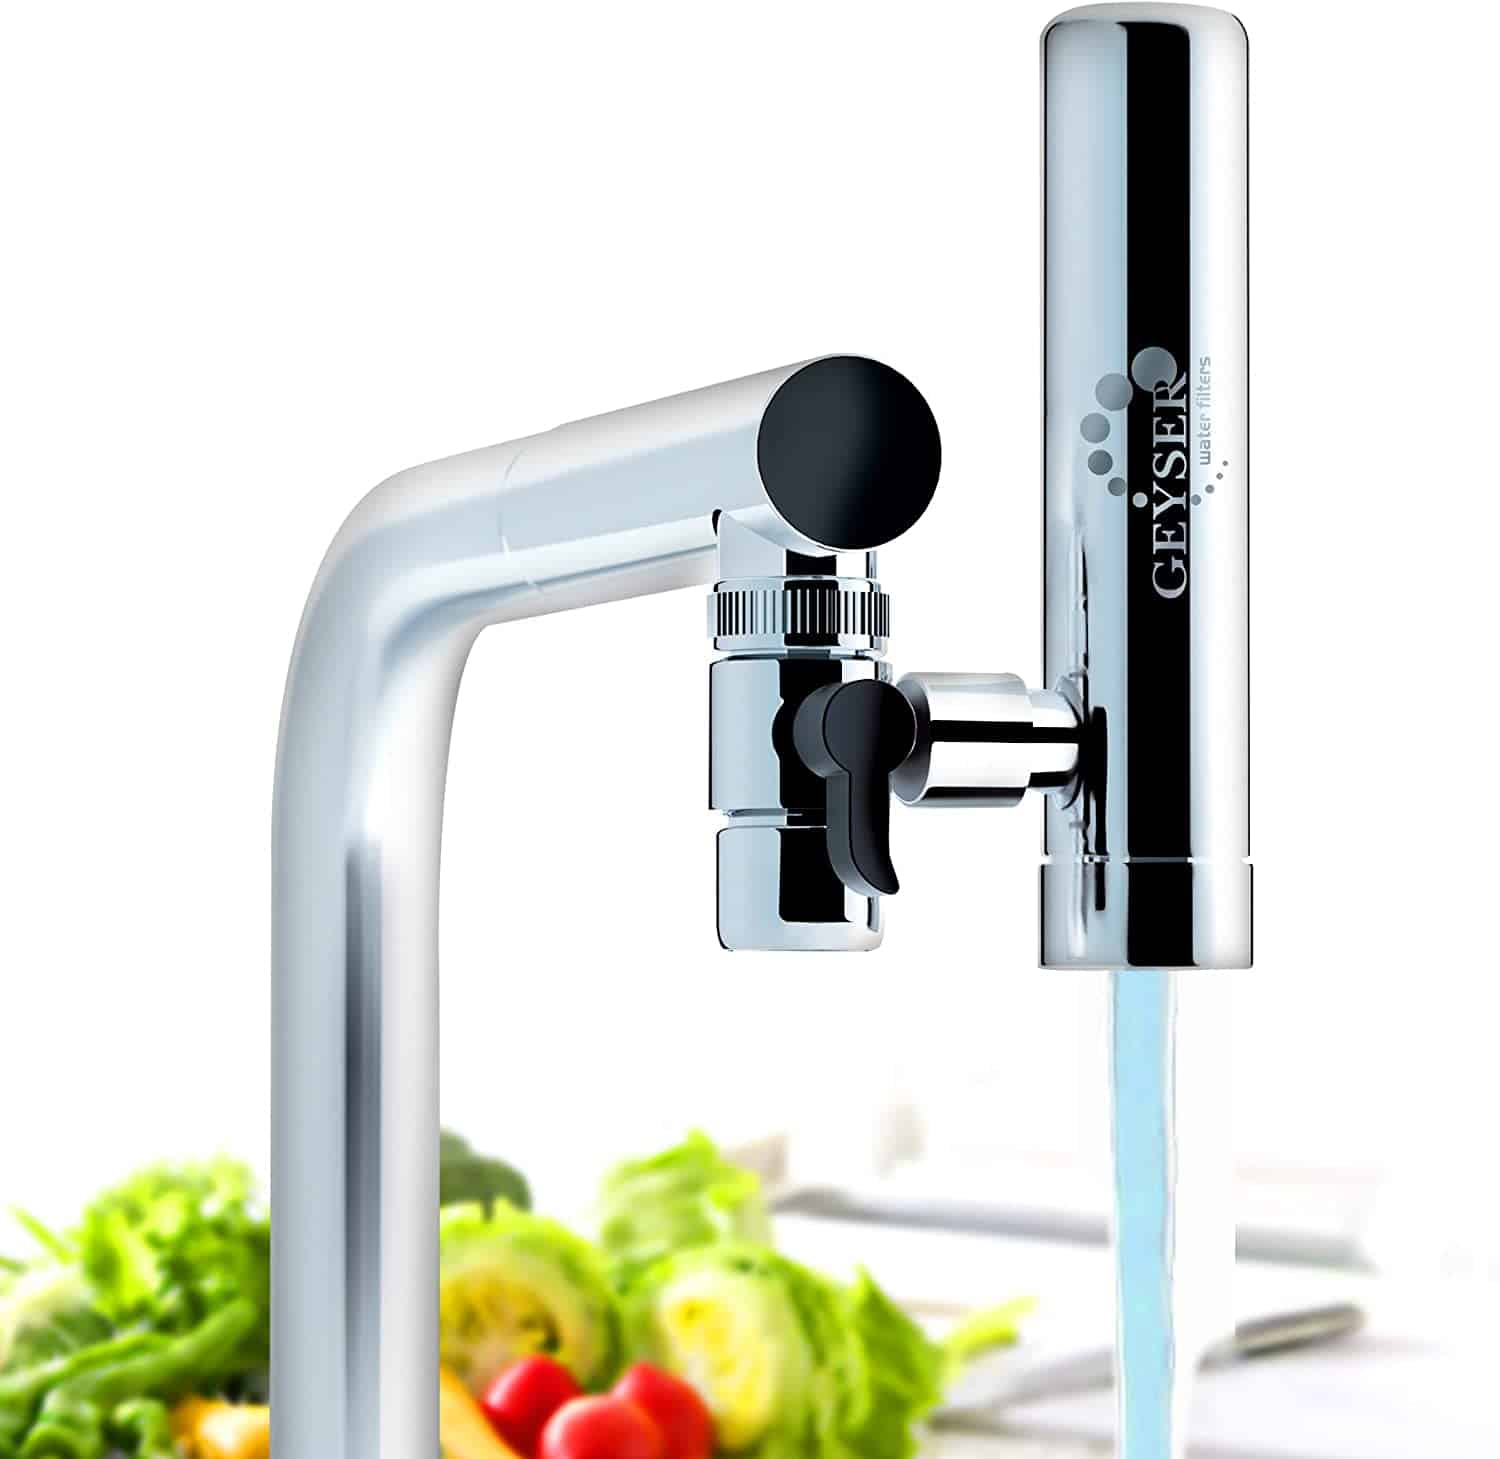 GEYSER EURO Water filter for kitchen tap